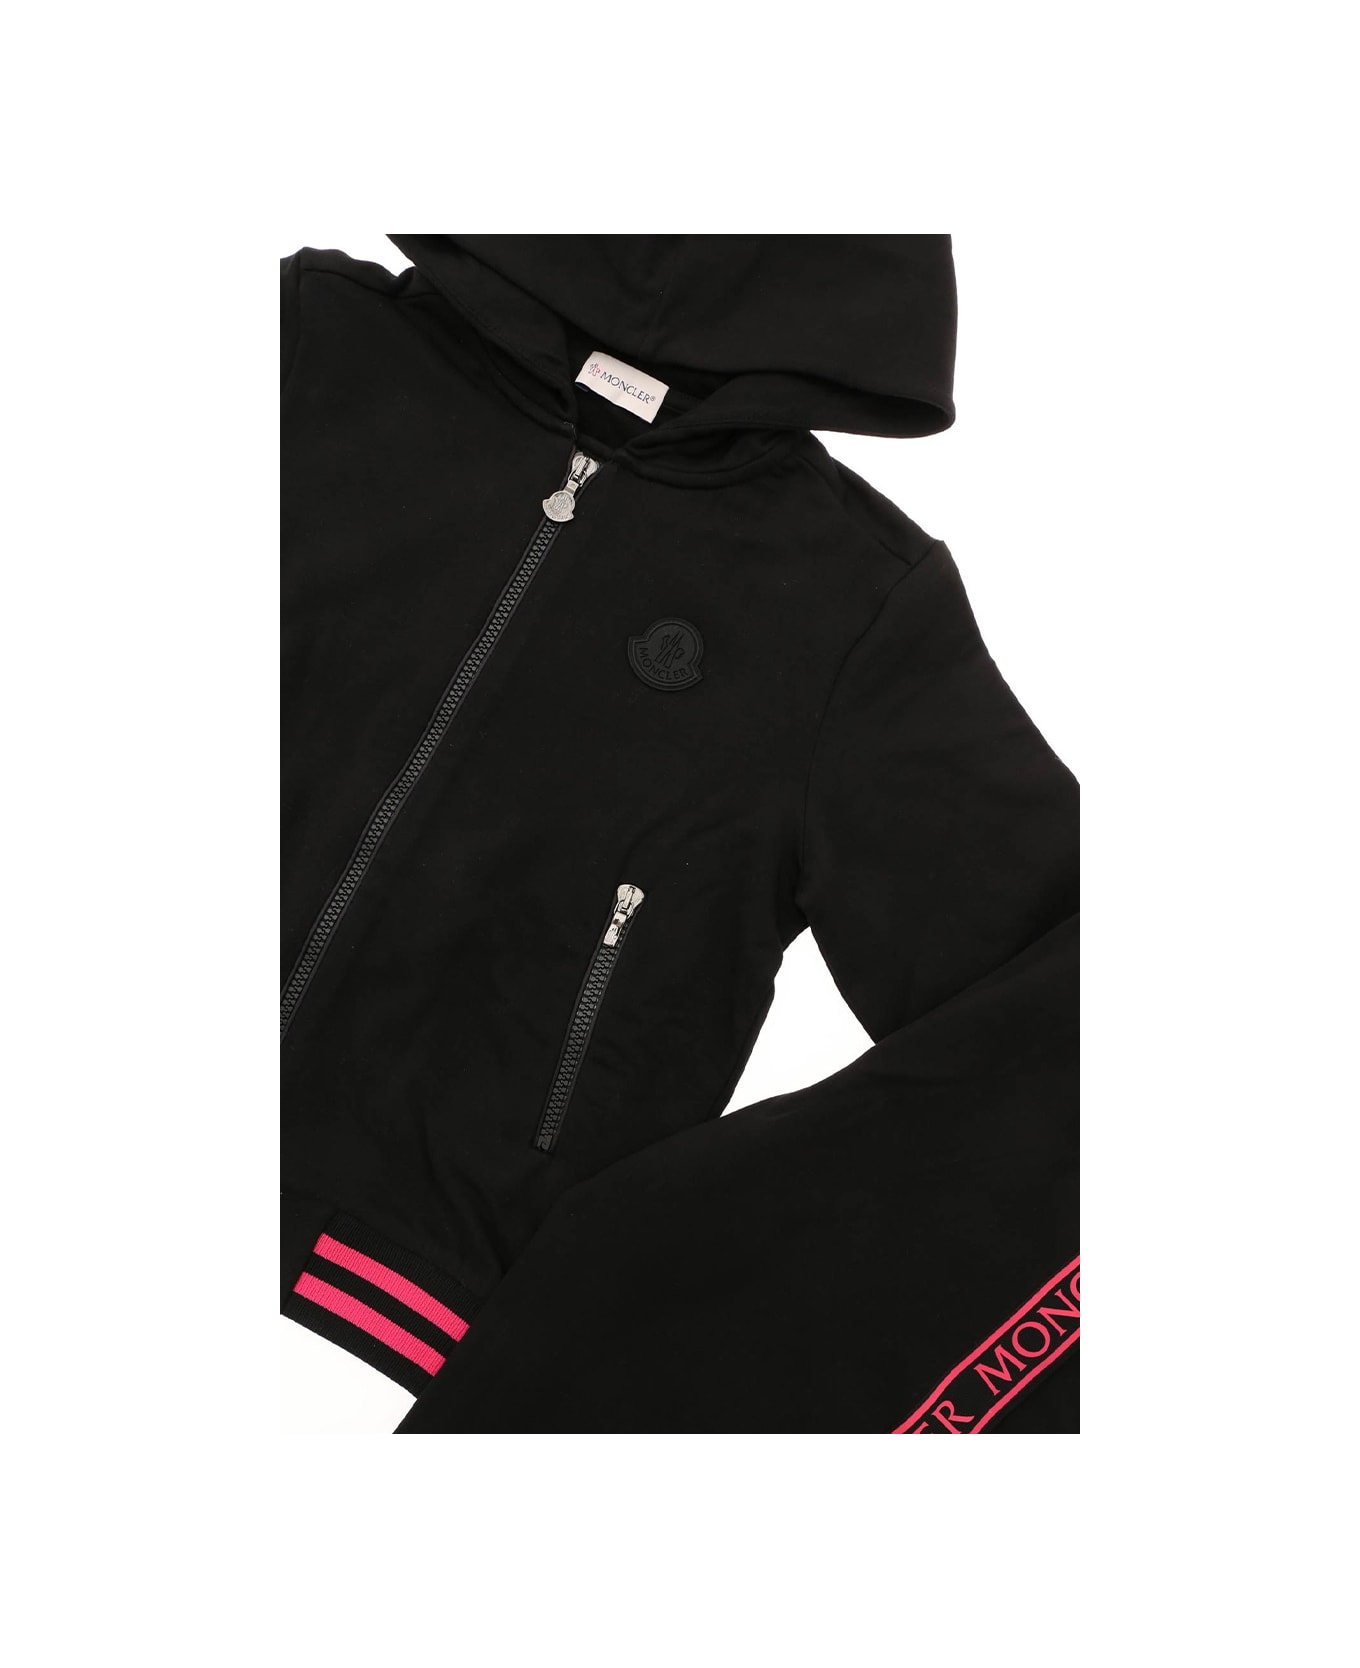 Moncler Jogging Suit - Black